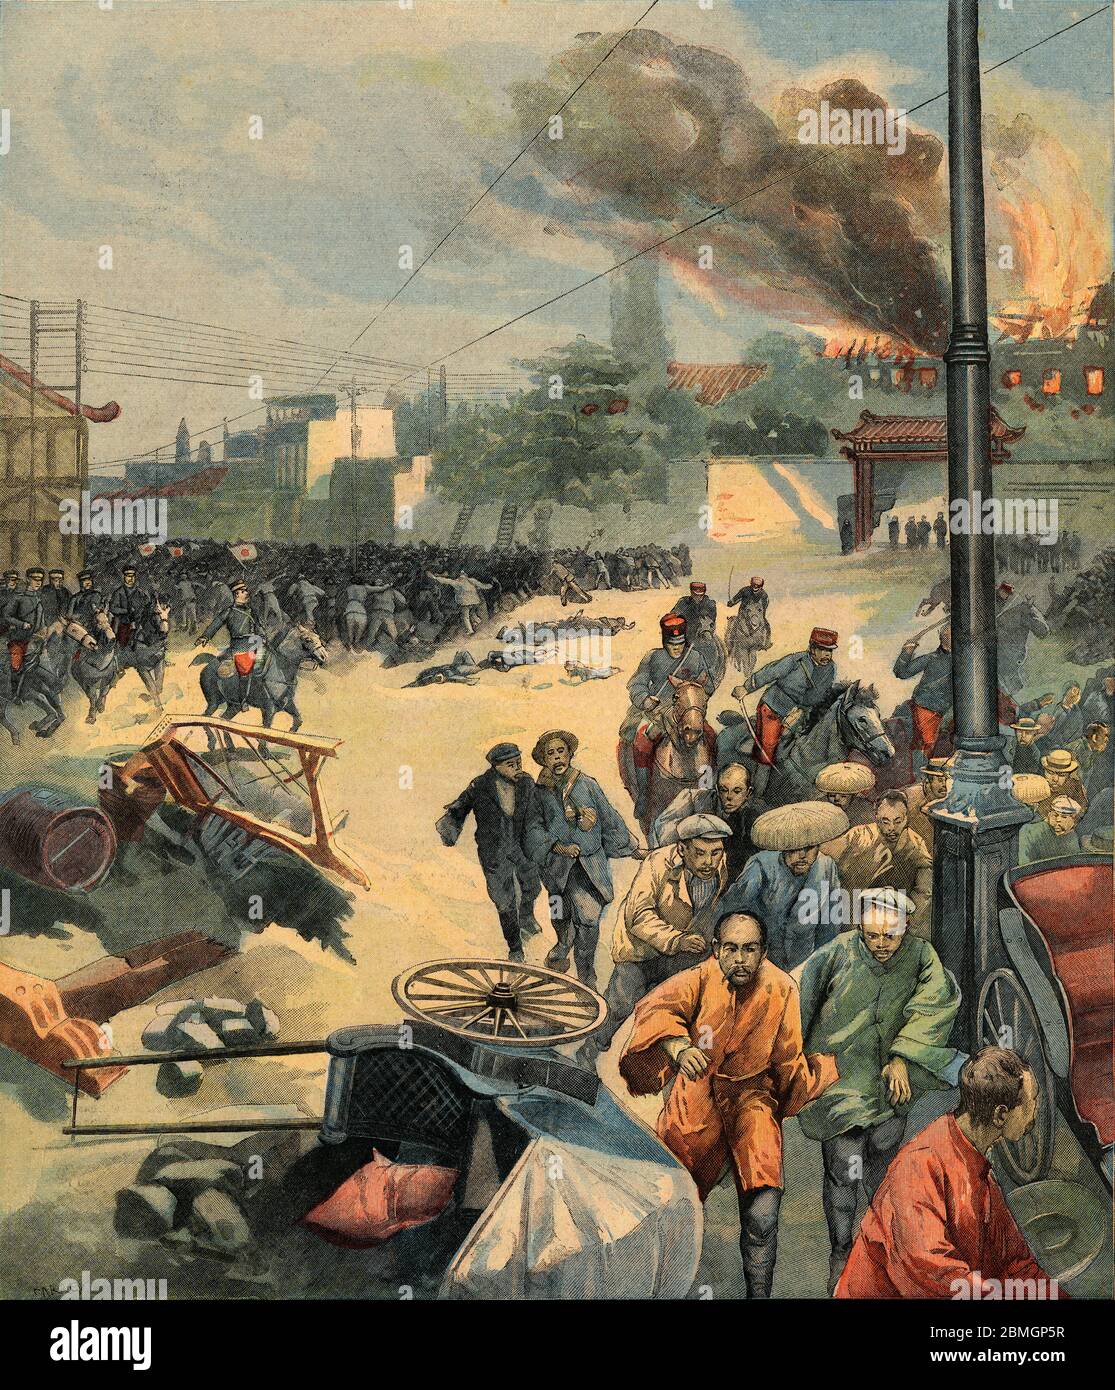 [ 1900 Japon - incident incendiaire Hibiya ] — Illustration de l'incident incendiaire Hibiya (日比谷焼打事件 Hibiya Yakiuchi Jiken), une émeute qui a éclaté à Tokyo le 5 septembre 1905 pour protester contre les termes du Traité de Portsmouth, qui a mis fin à la guerre russo-japonaise (1904-1905). Des foules en colère ont fait des randonnées de deux jours et ont détruit ou endommagé plus de 350 bâtiments. Des centaines de personnes ont été blessées et 17 ont été tuées. Les troubles se sont propagé au Japon et ont duré des mois. Cette image a été publiée dans le petit parisien. illustration de journaux du xxe siècle. Banque D'Images